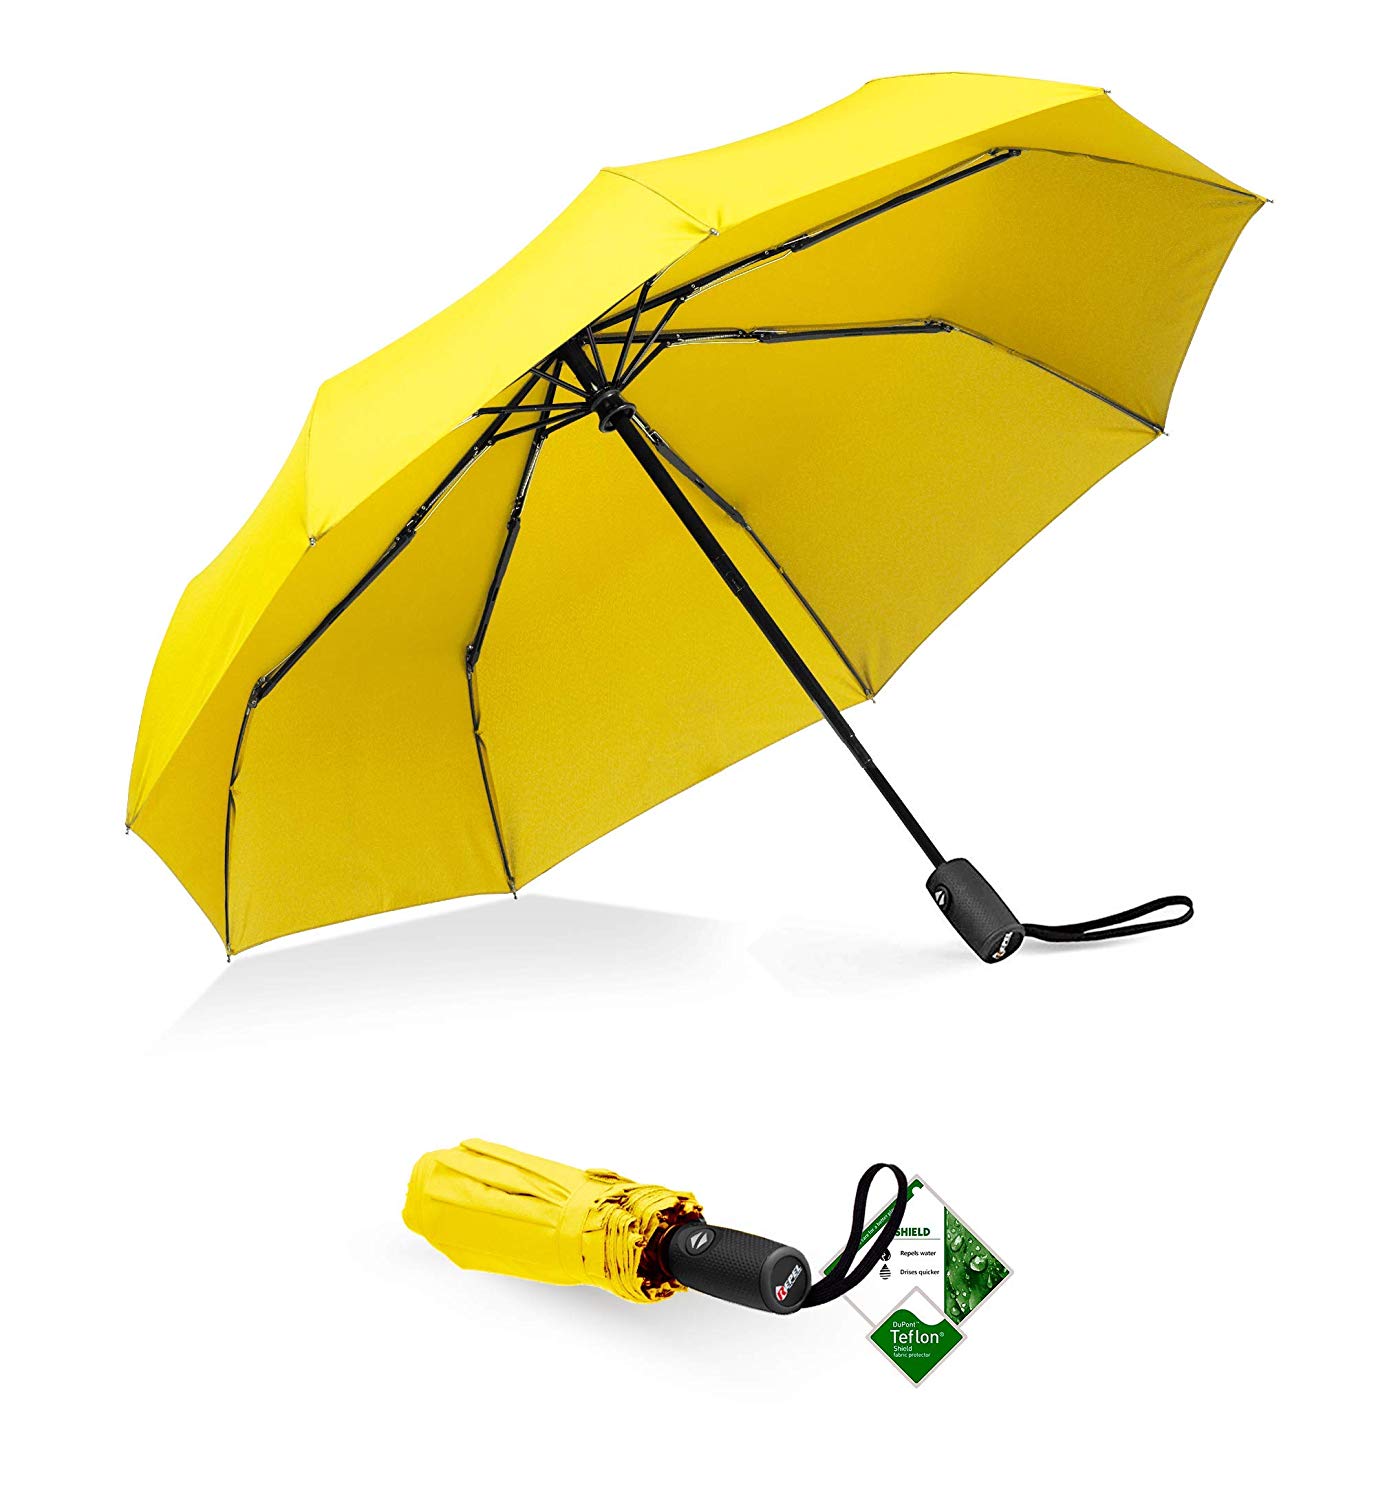 best windproof umbrella 2018